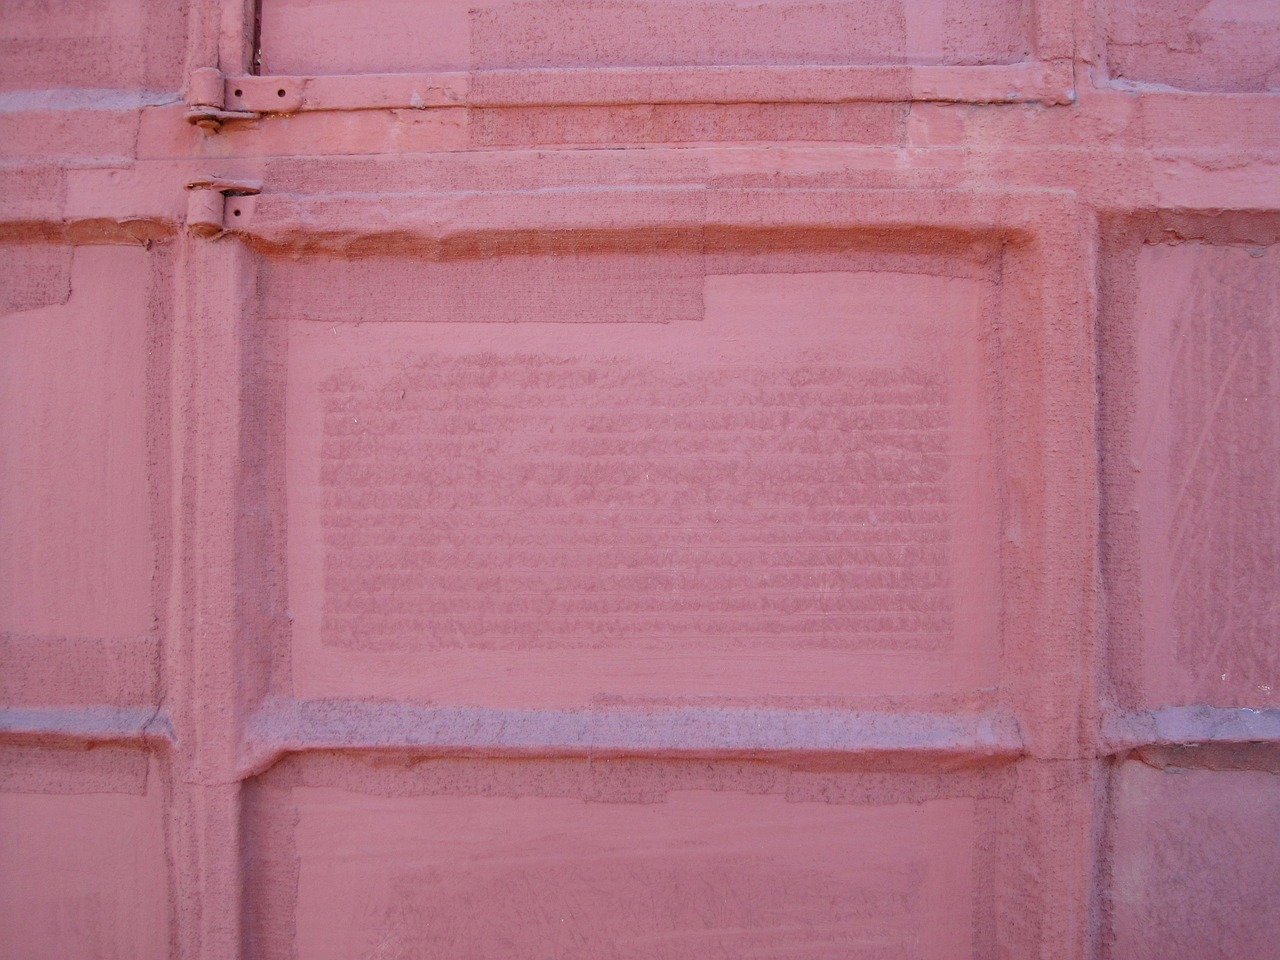 Painted over. Розовый кирпич. Розовые окна. Розовая стена с окном. Старая розовая кирпичная стена.